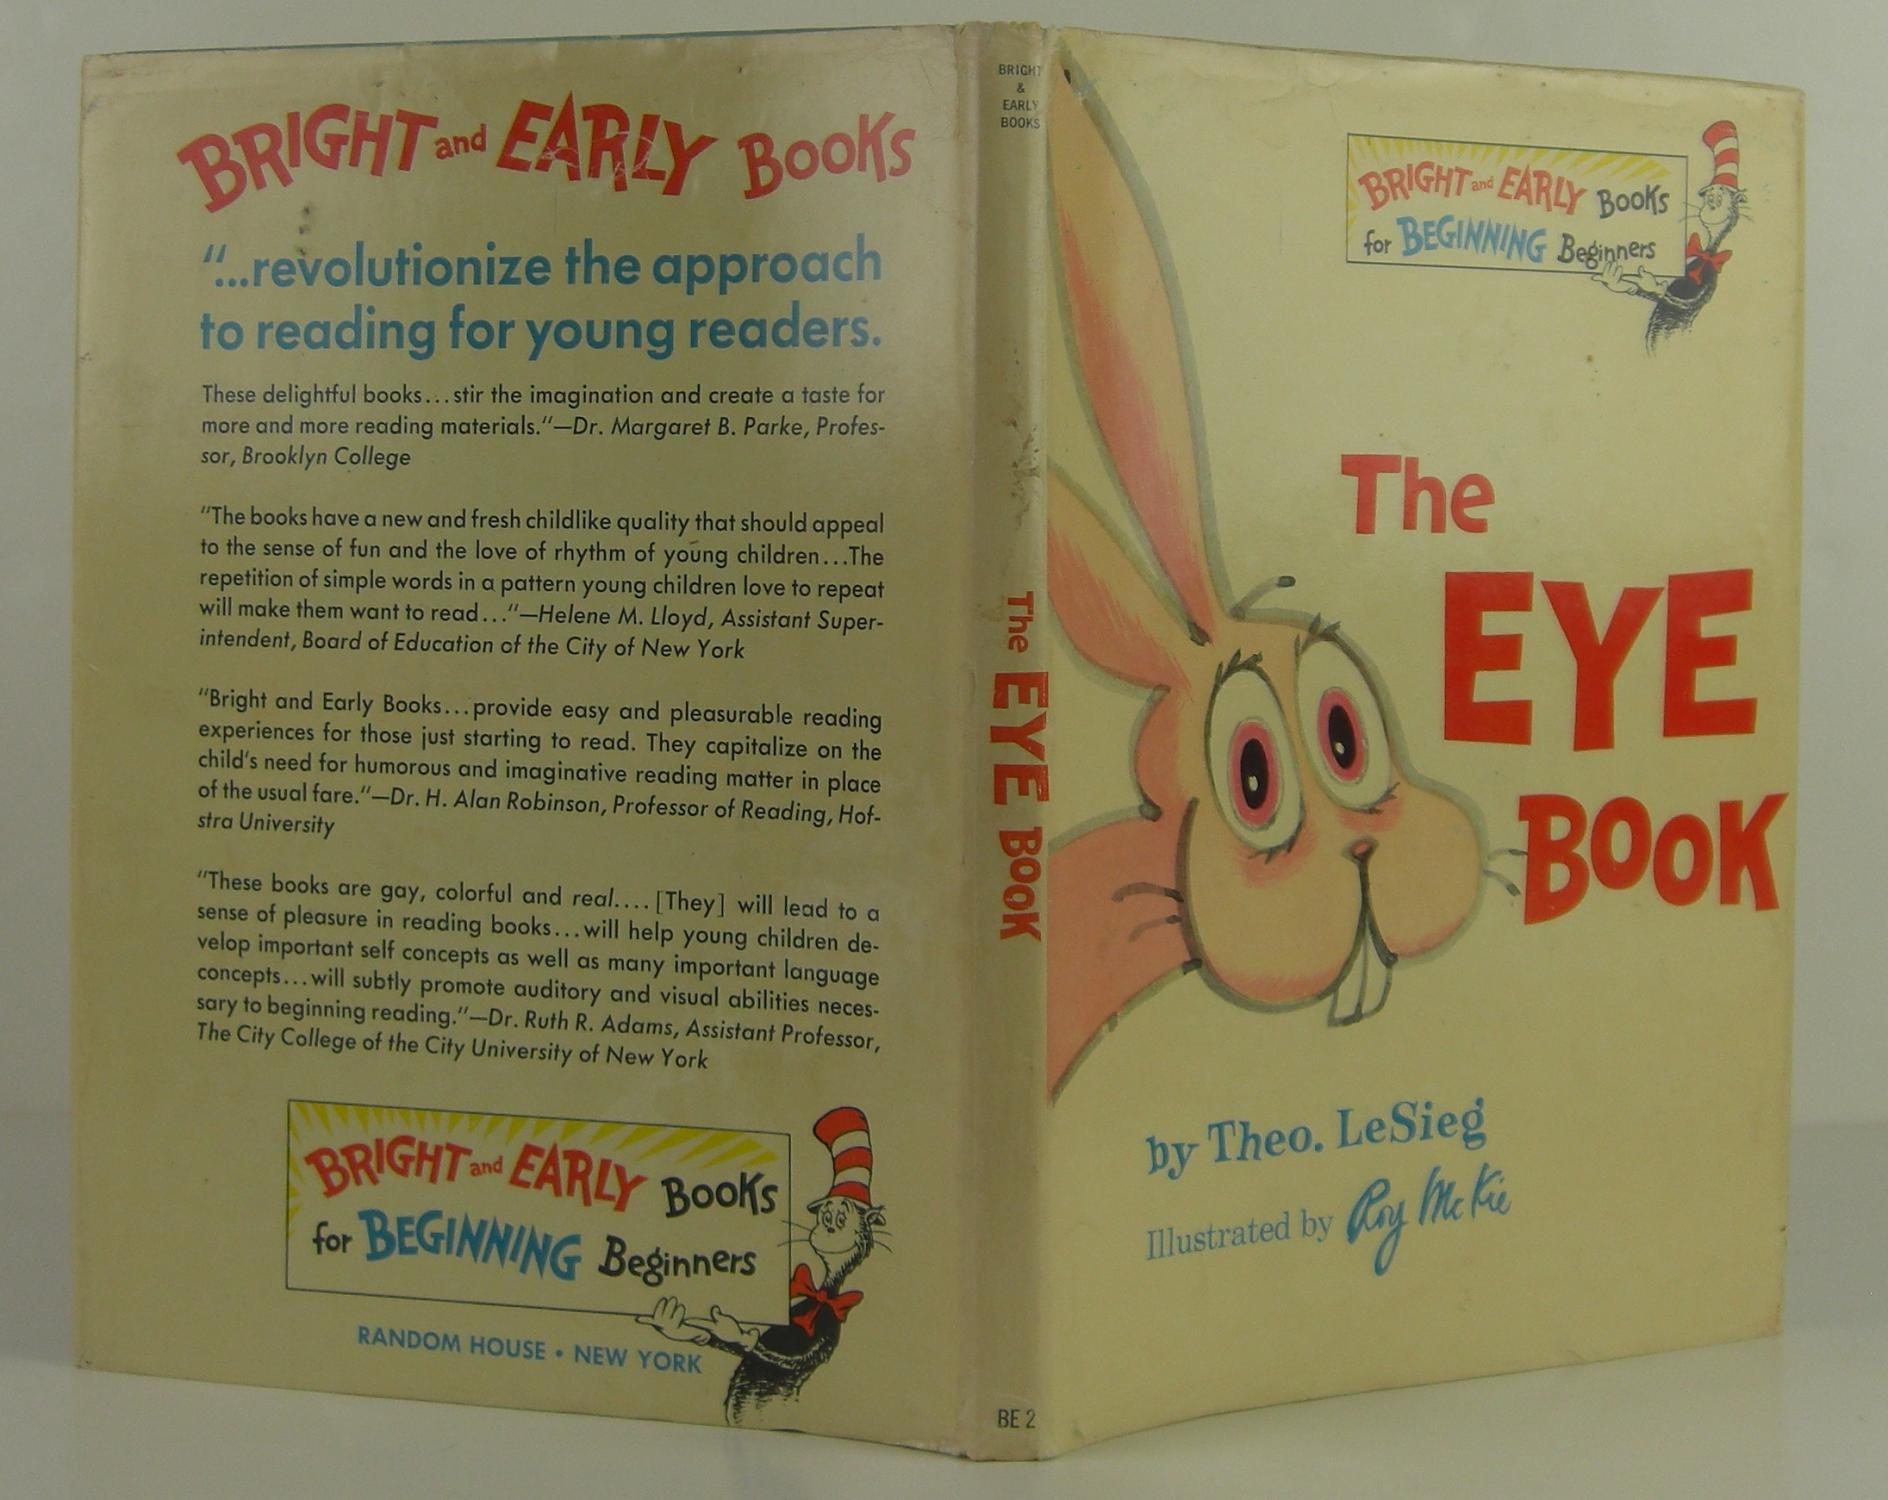 Eye [Book]